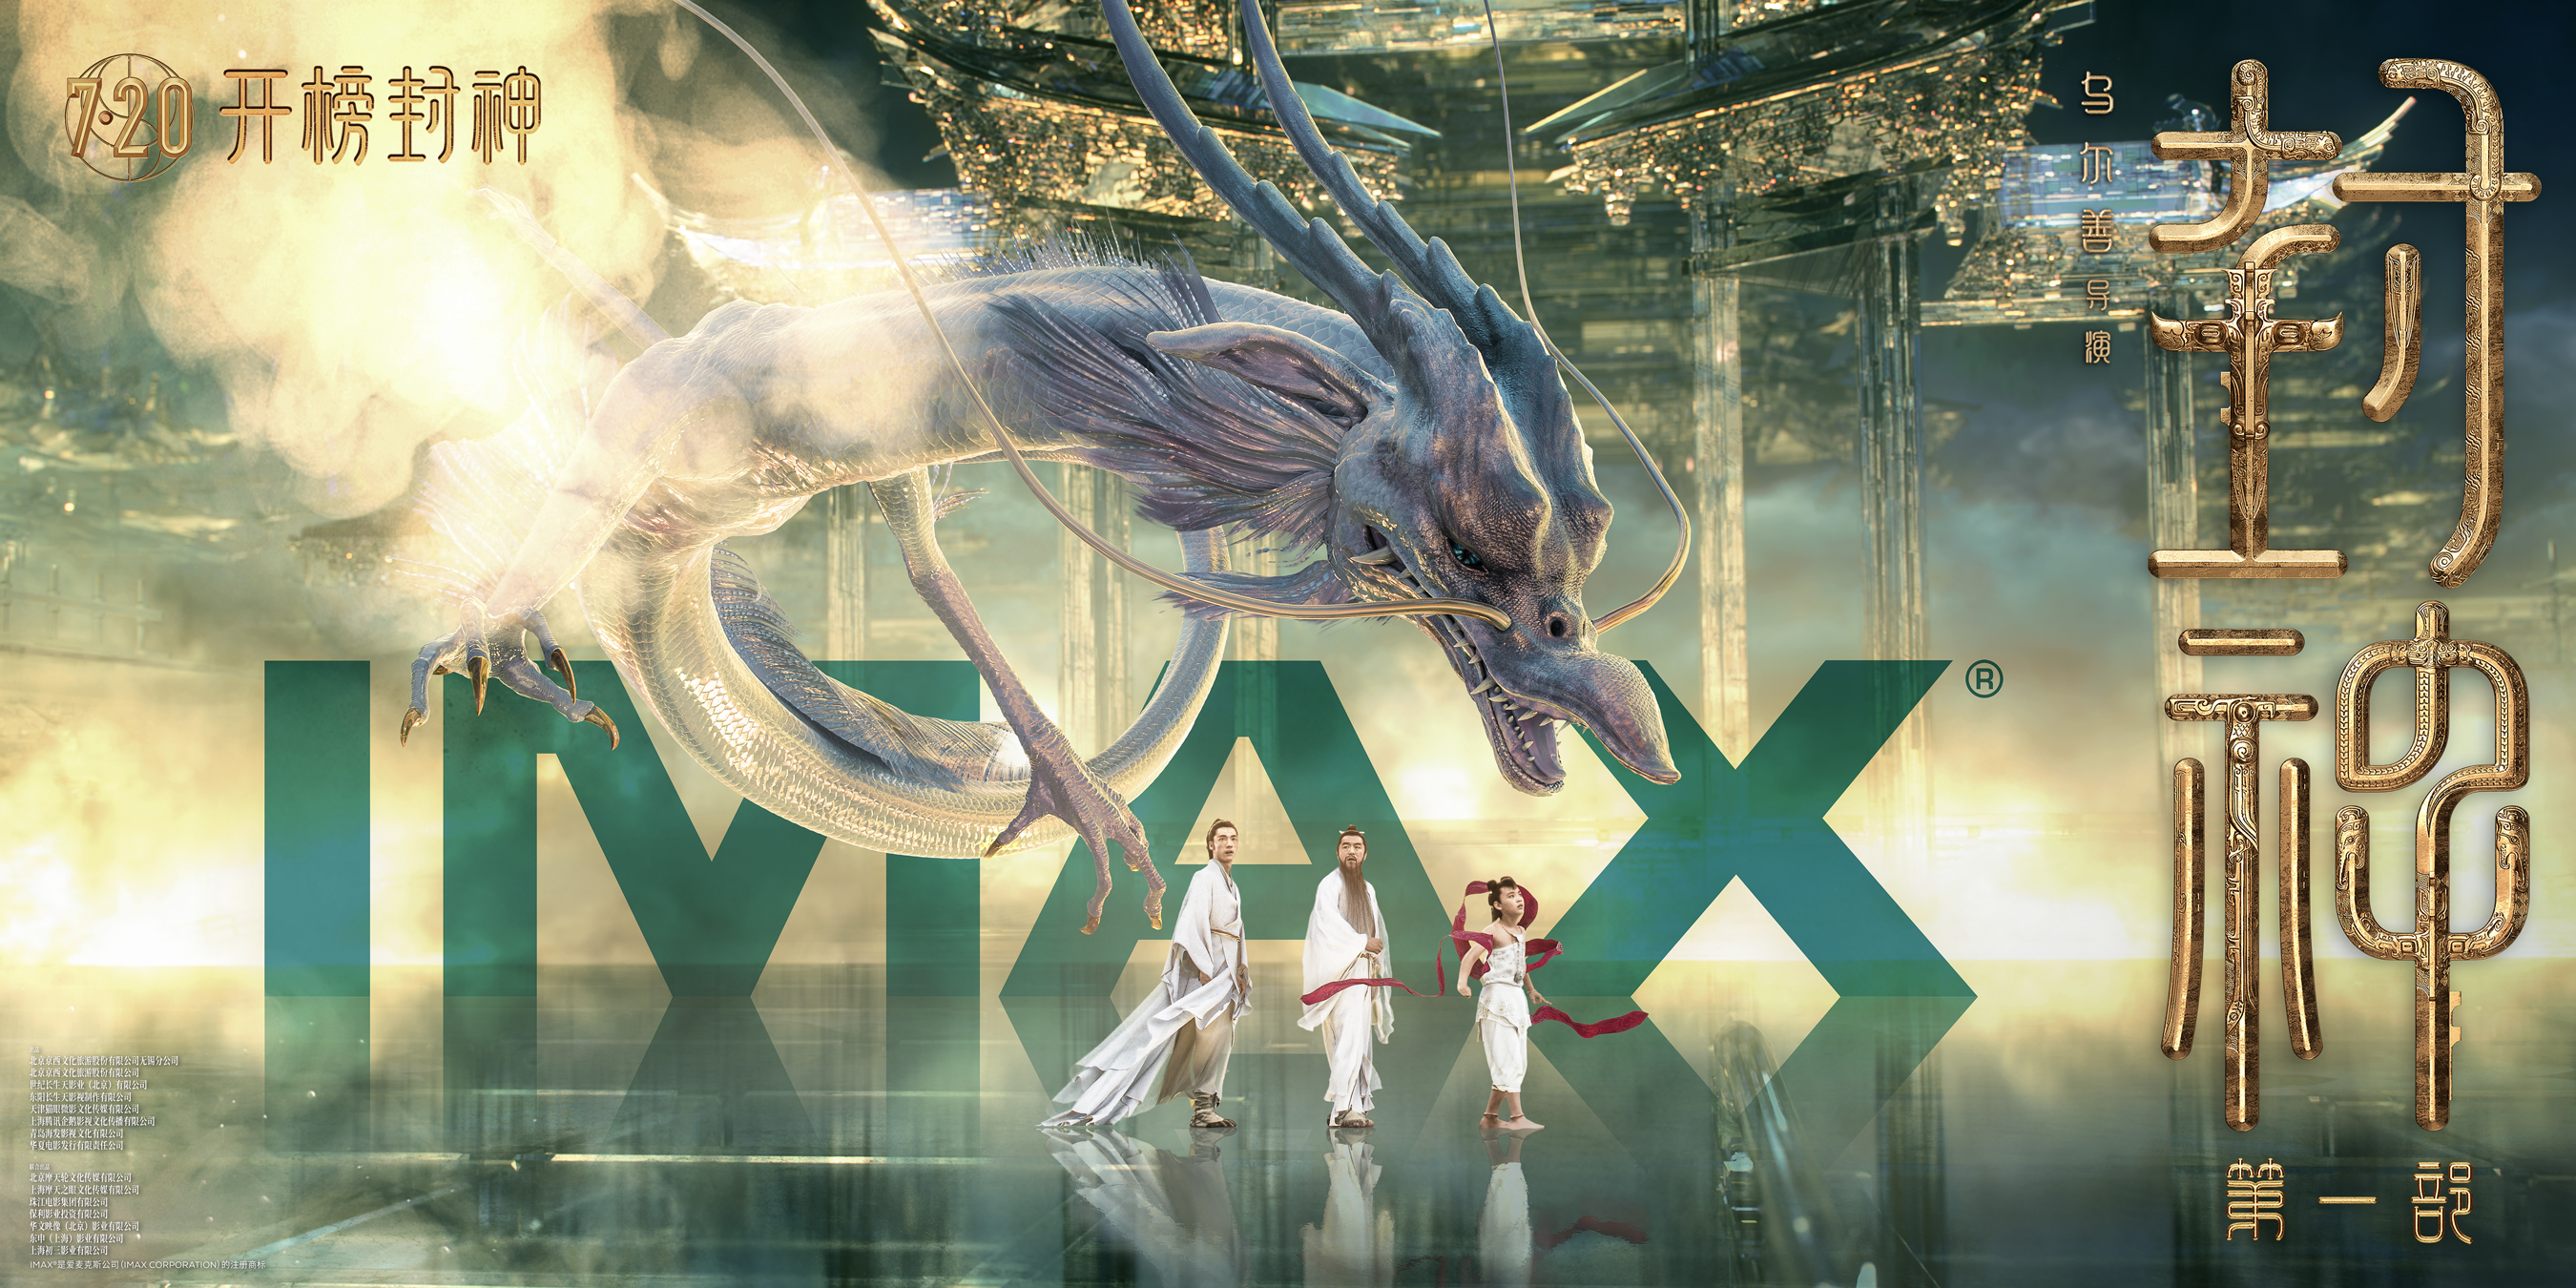  IMAX对话《封神第一部》乌尔善：真实是无敌的 IMAX助力“一幕封神”